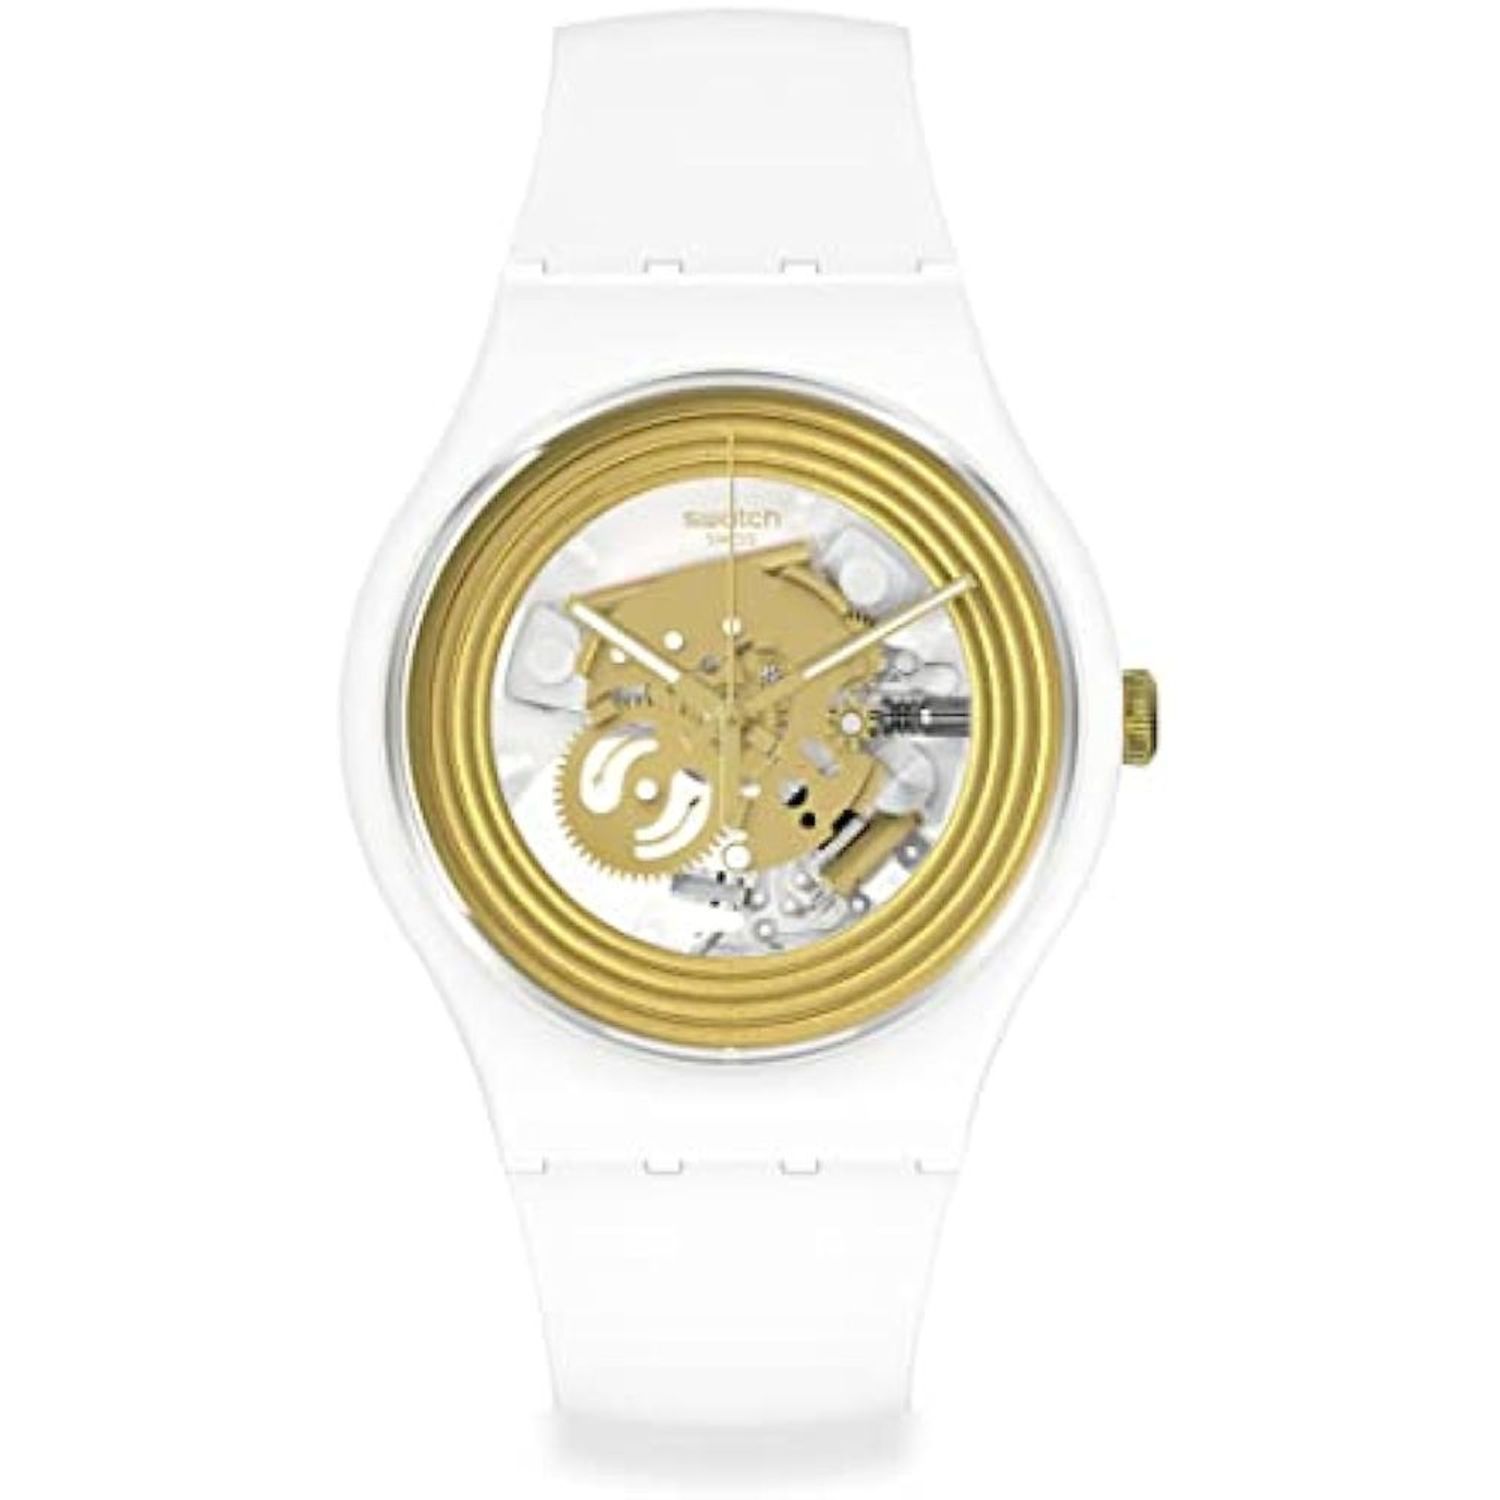 Las mejores ofertas en Relojes de pulsera de Lujo Para hombres Swatch